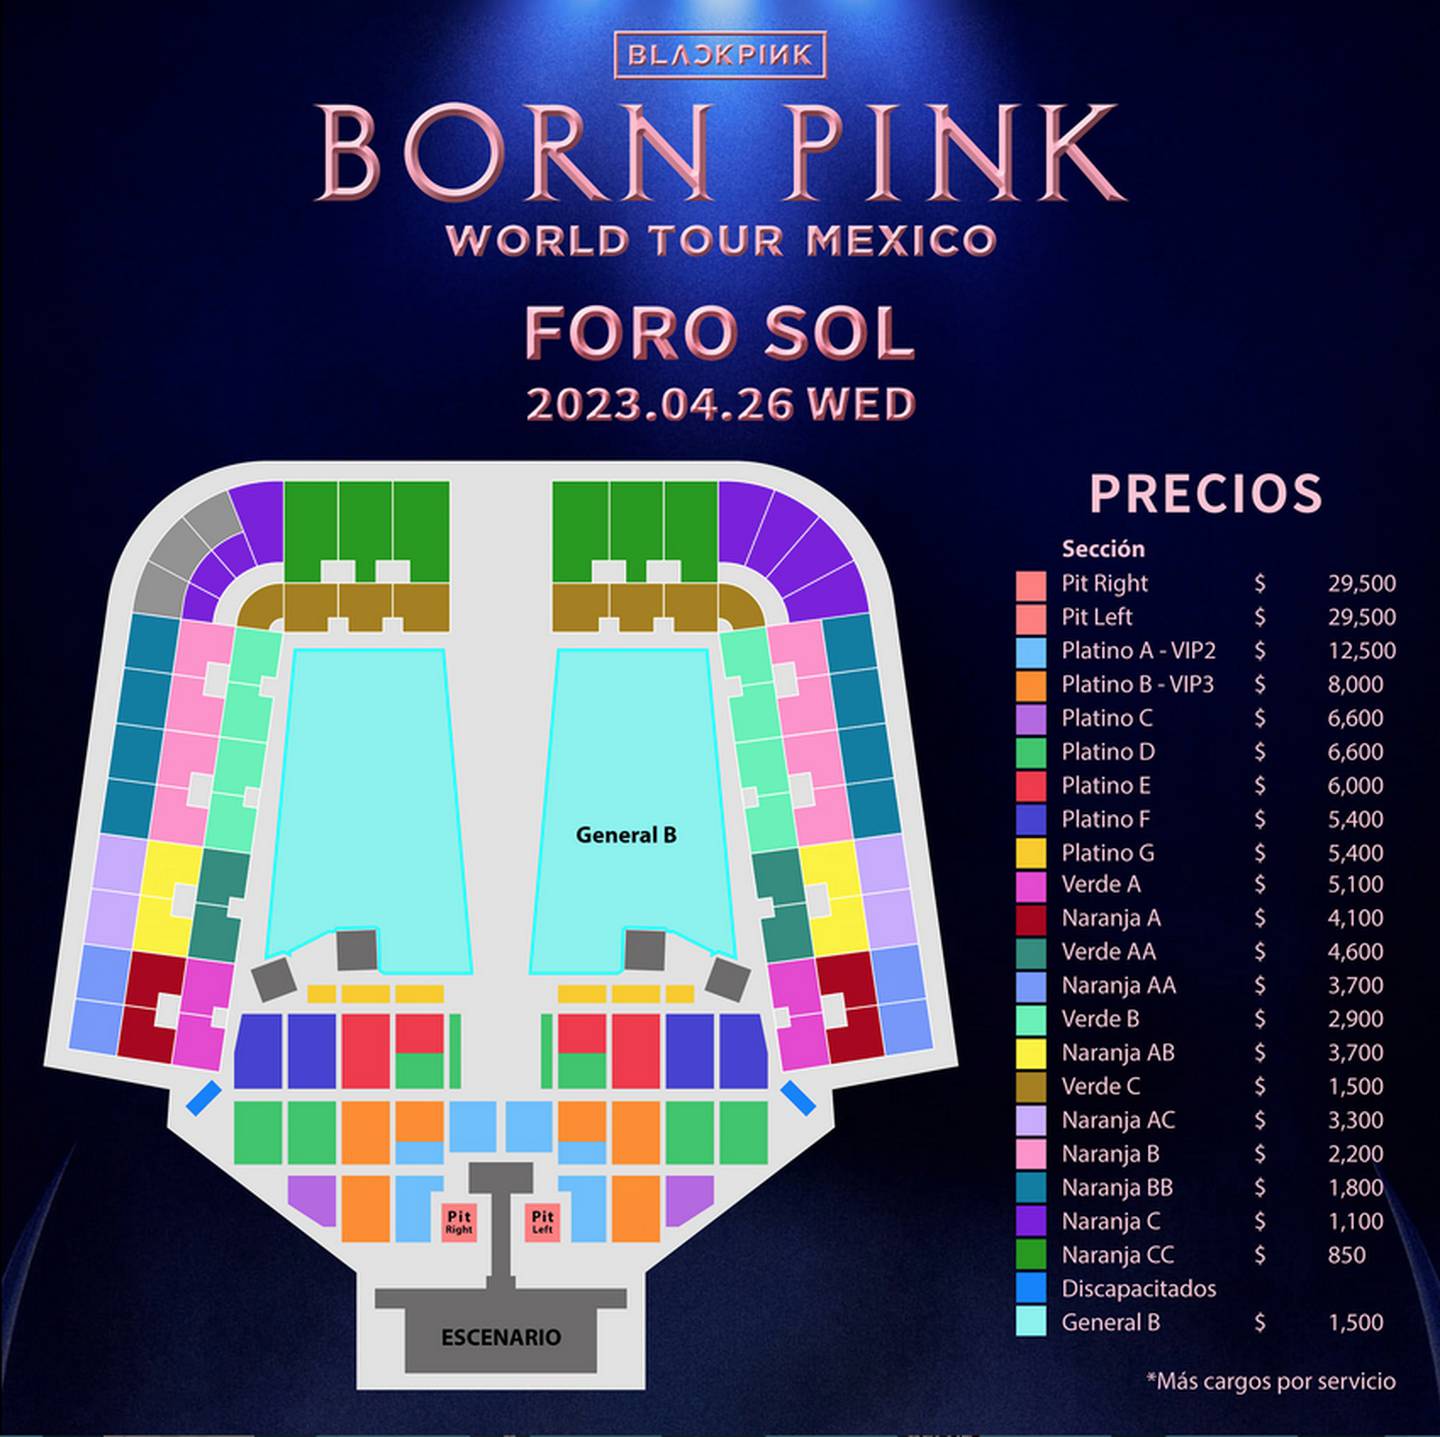 BLACKPINK en México Conoce el setlist oficial para concierto Foro Sol